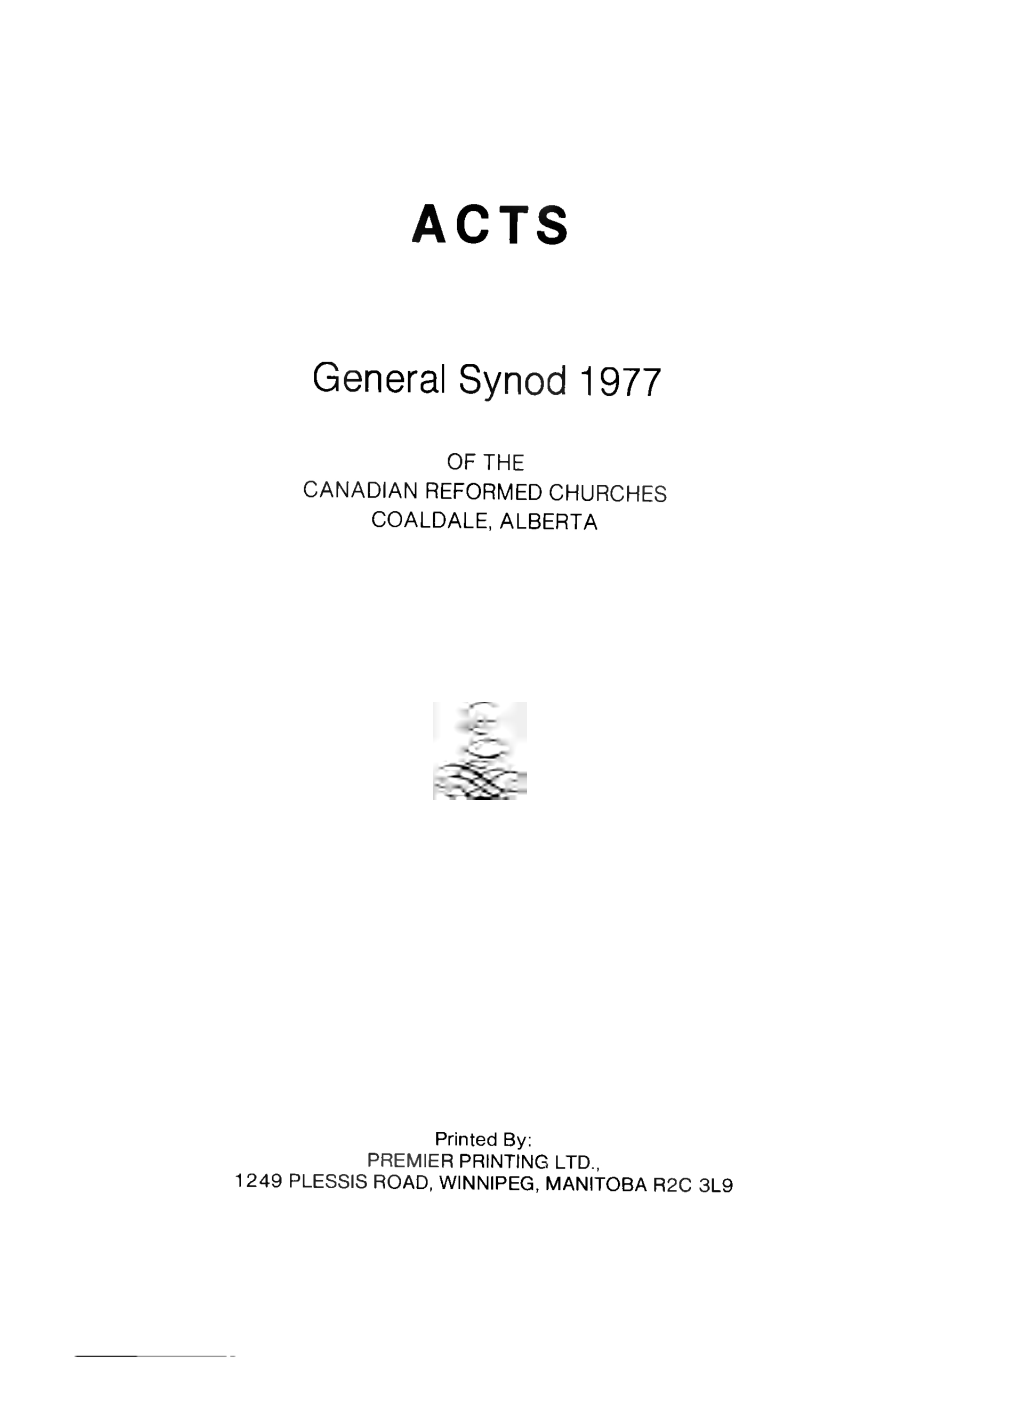 General Synod 1977